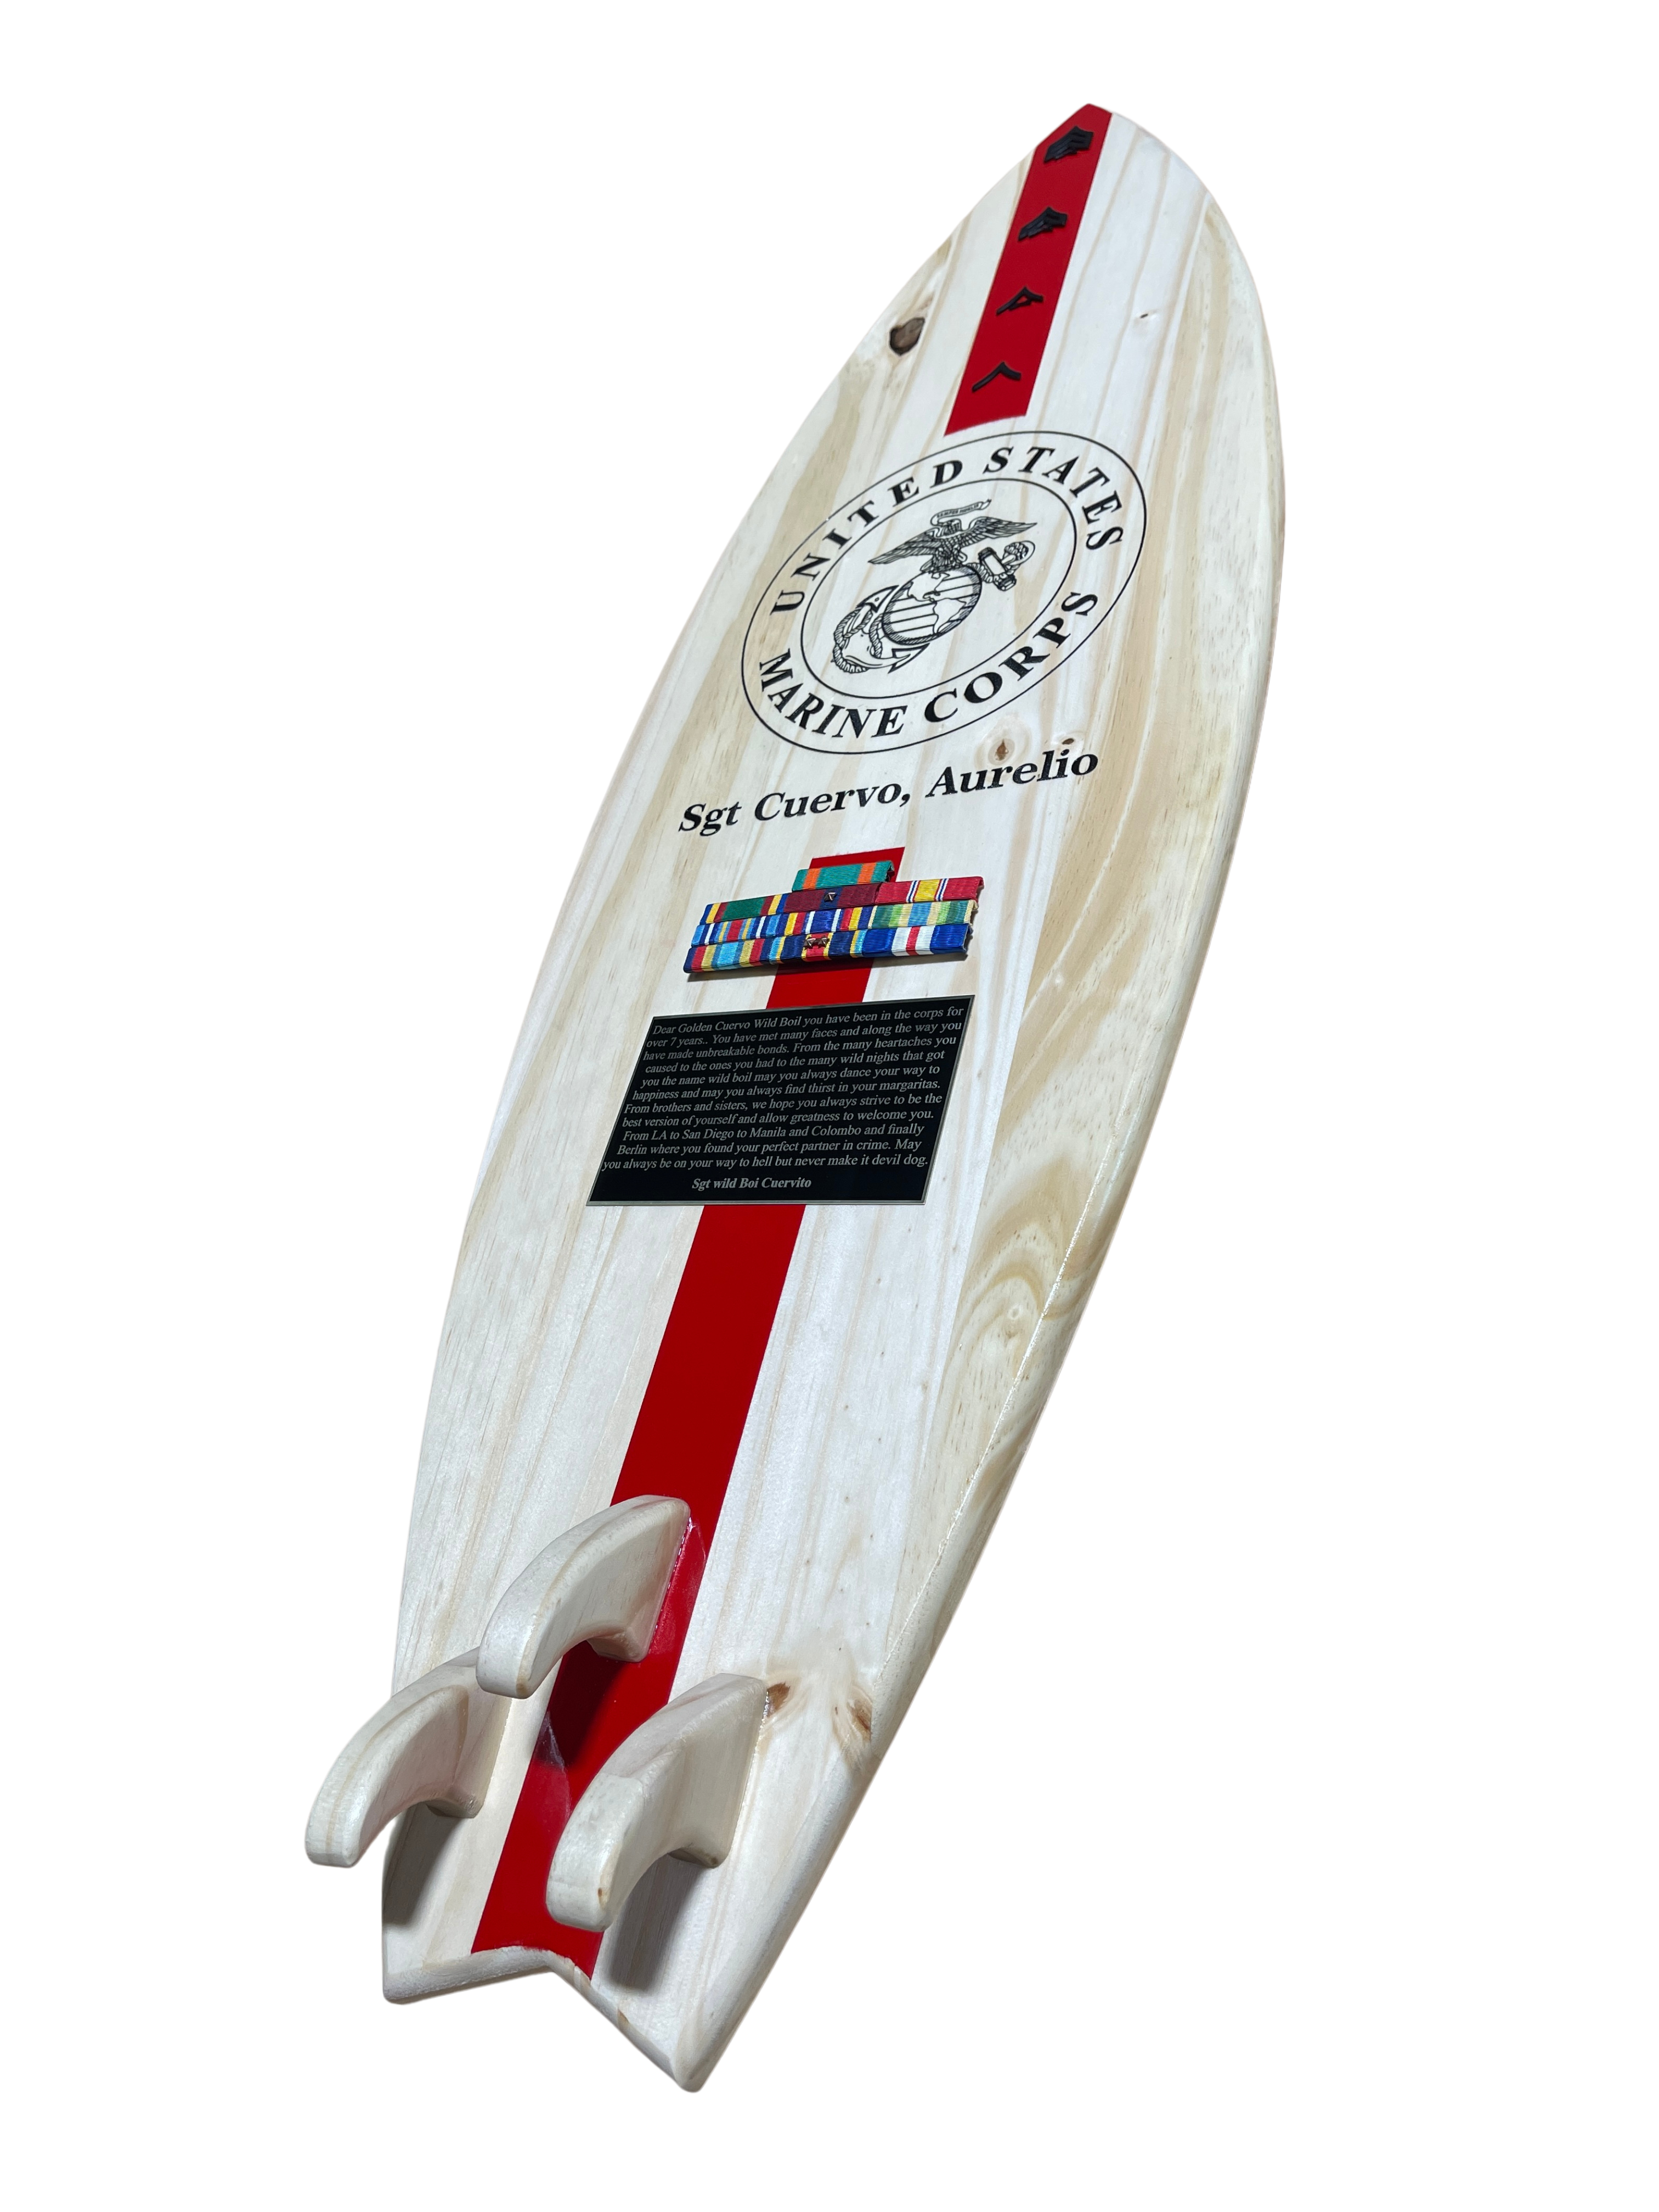 Surfboard plaque